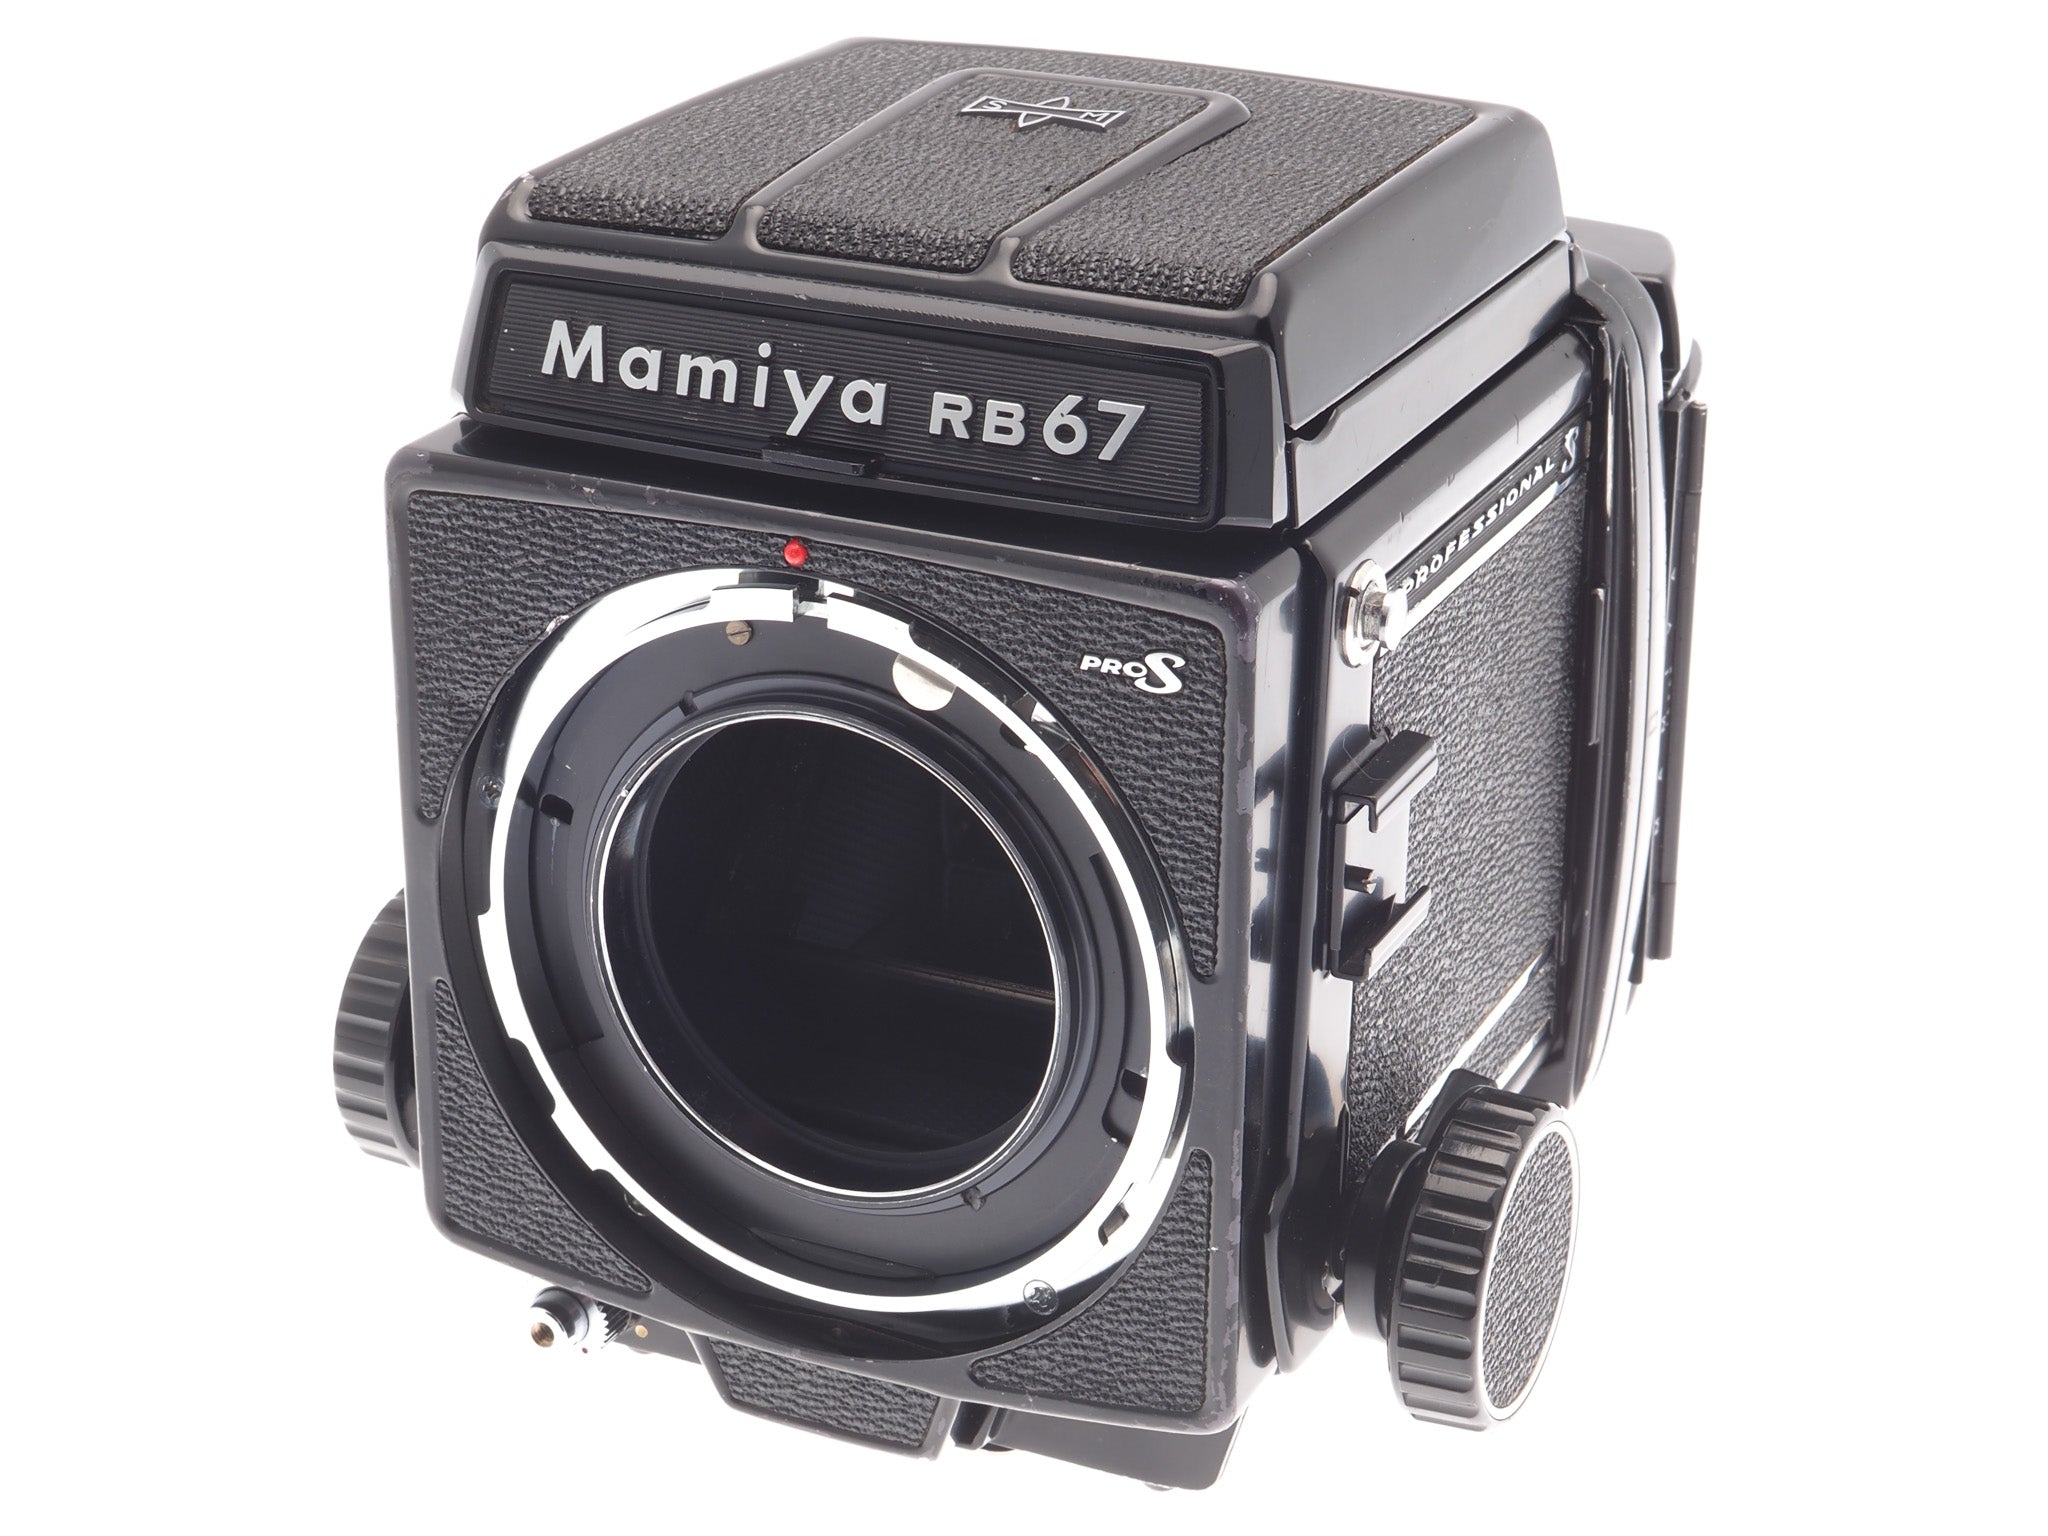 Mamiya RB67 Pro-S + 120 Pro-S 6x7 Film Back + 90mm f3.8 Sekor C + 